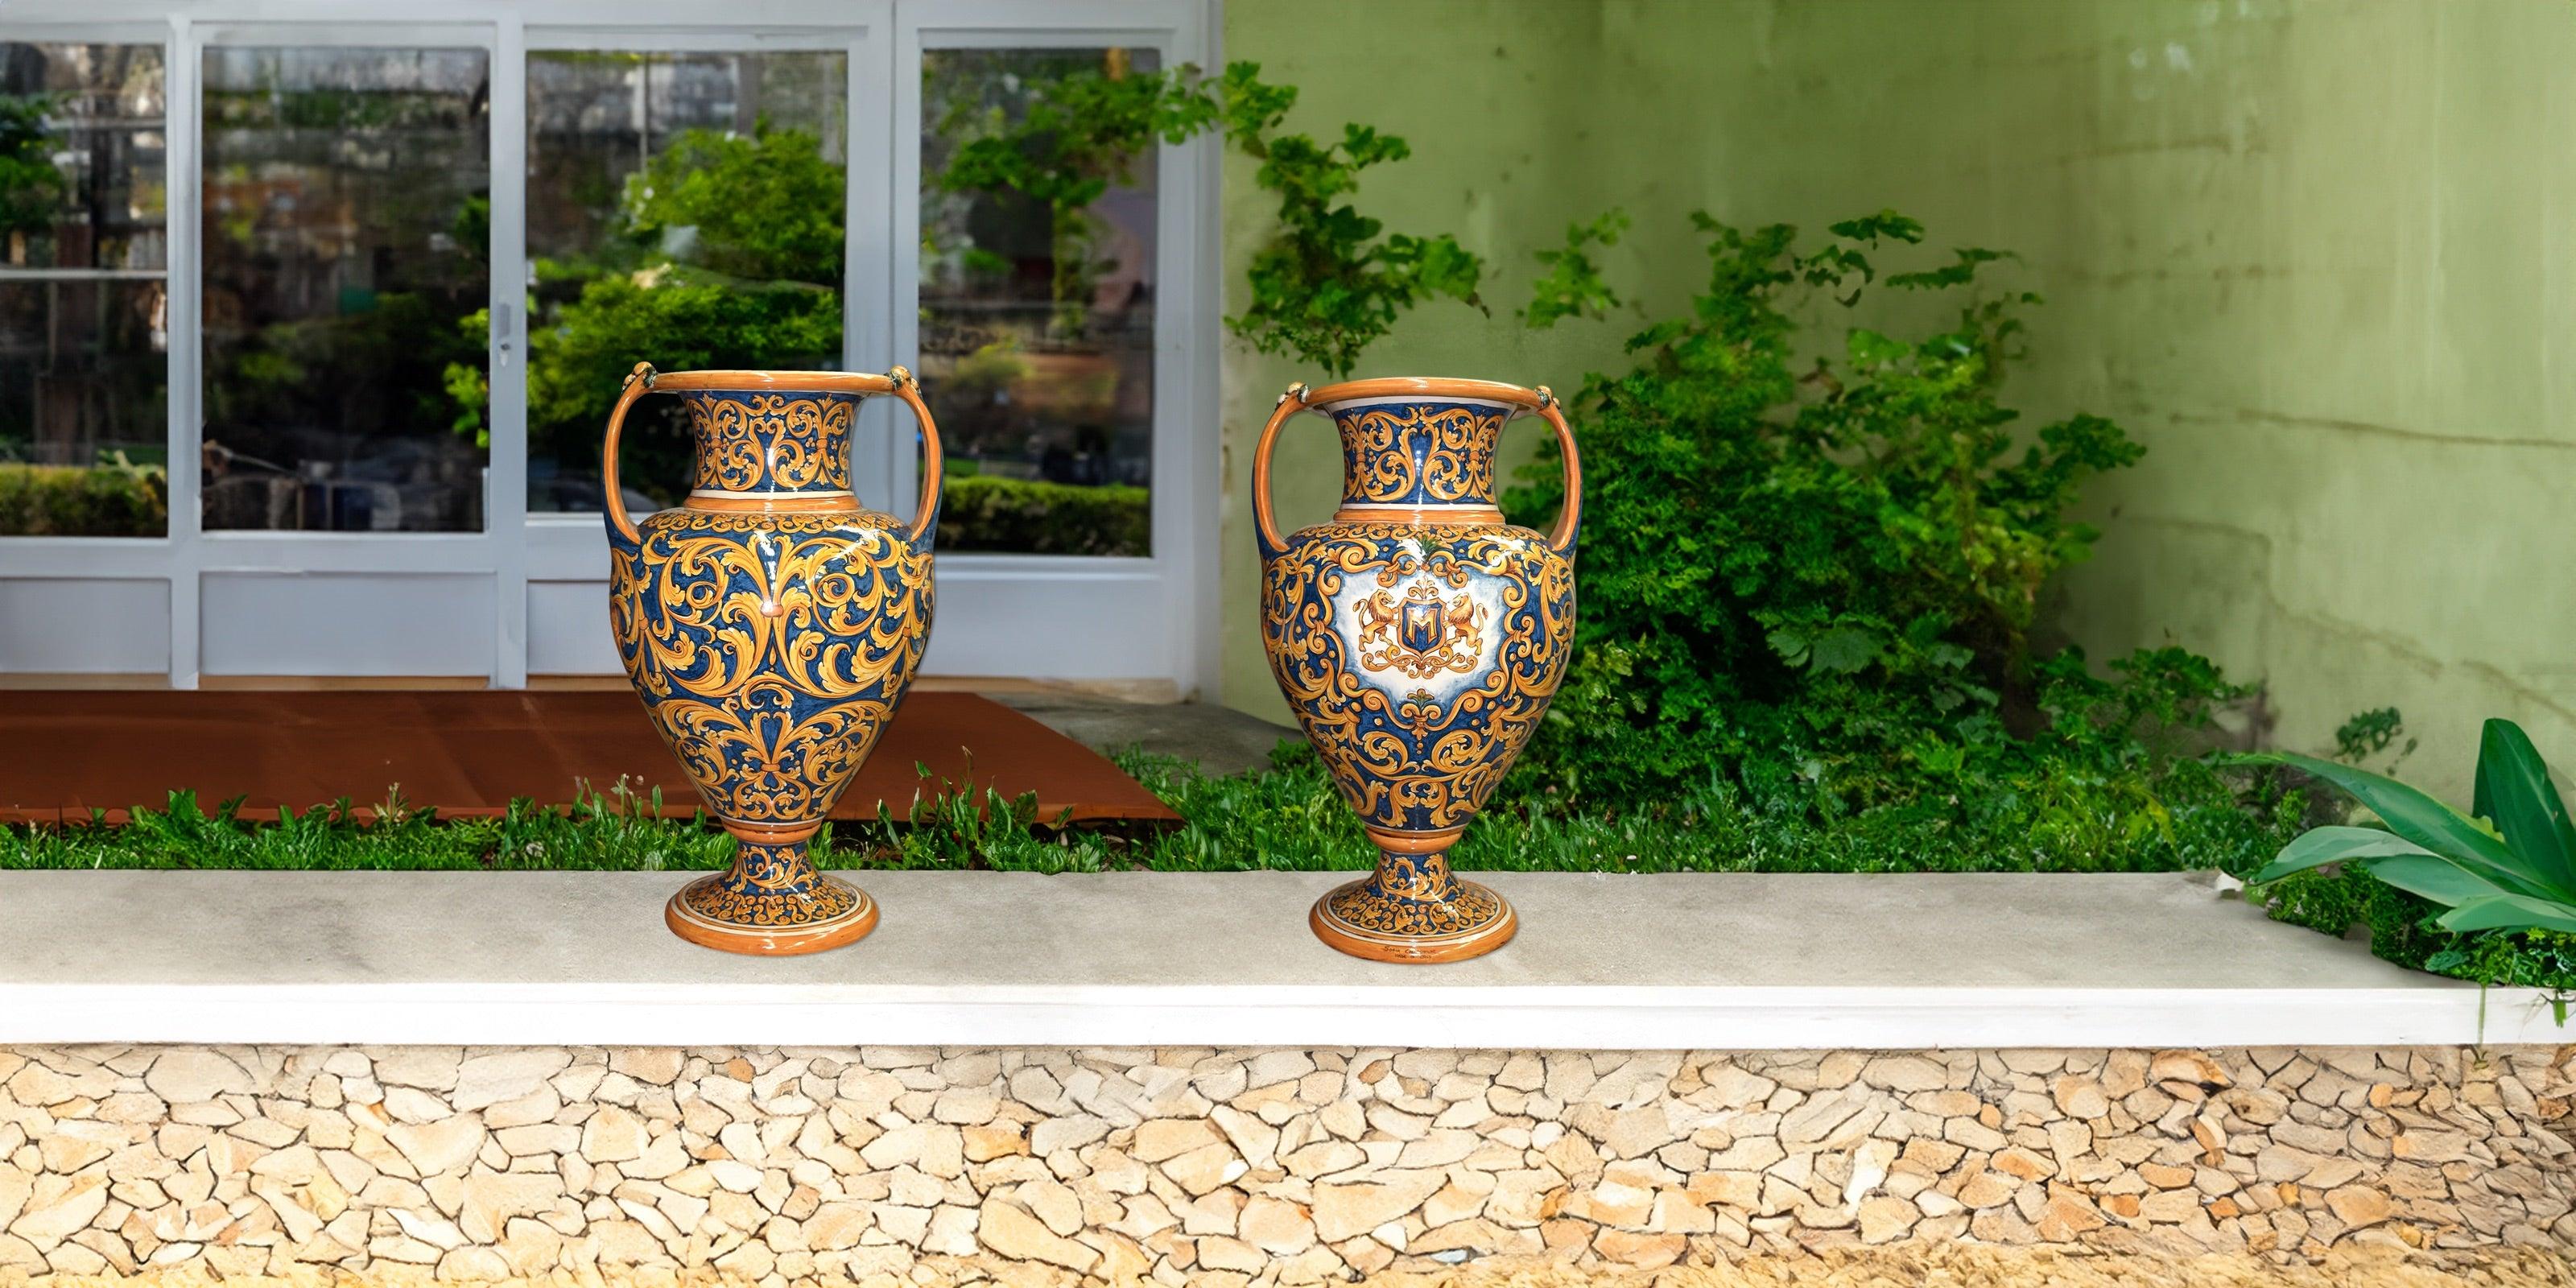 Collezioni in serie limitata - Ceramiche di Caltagirone Sofia